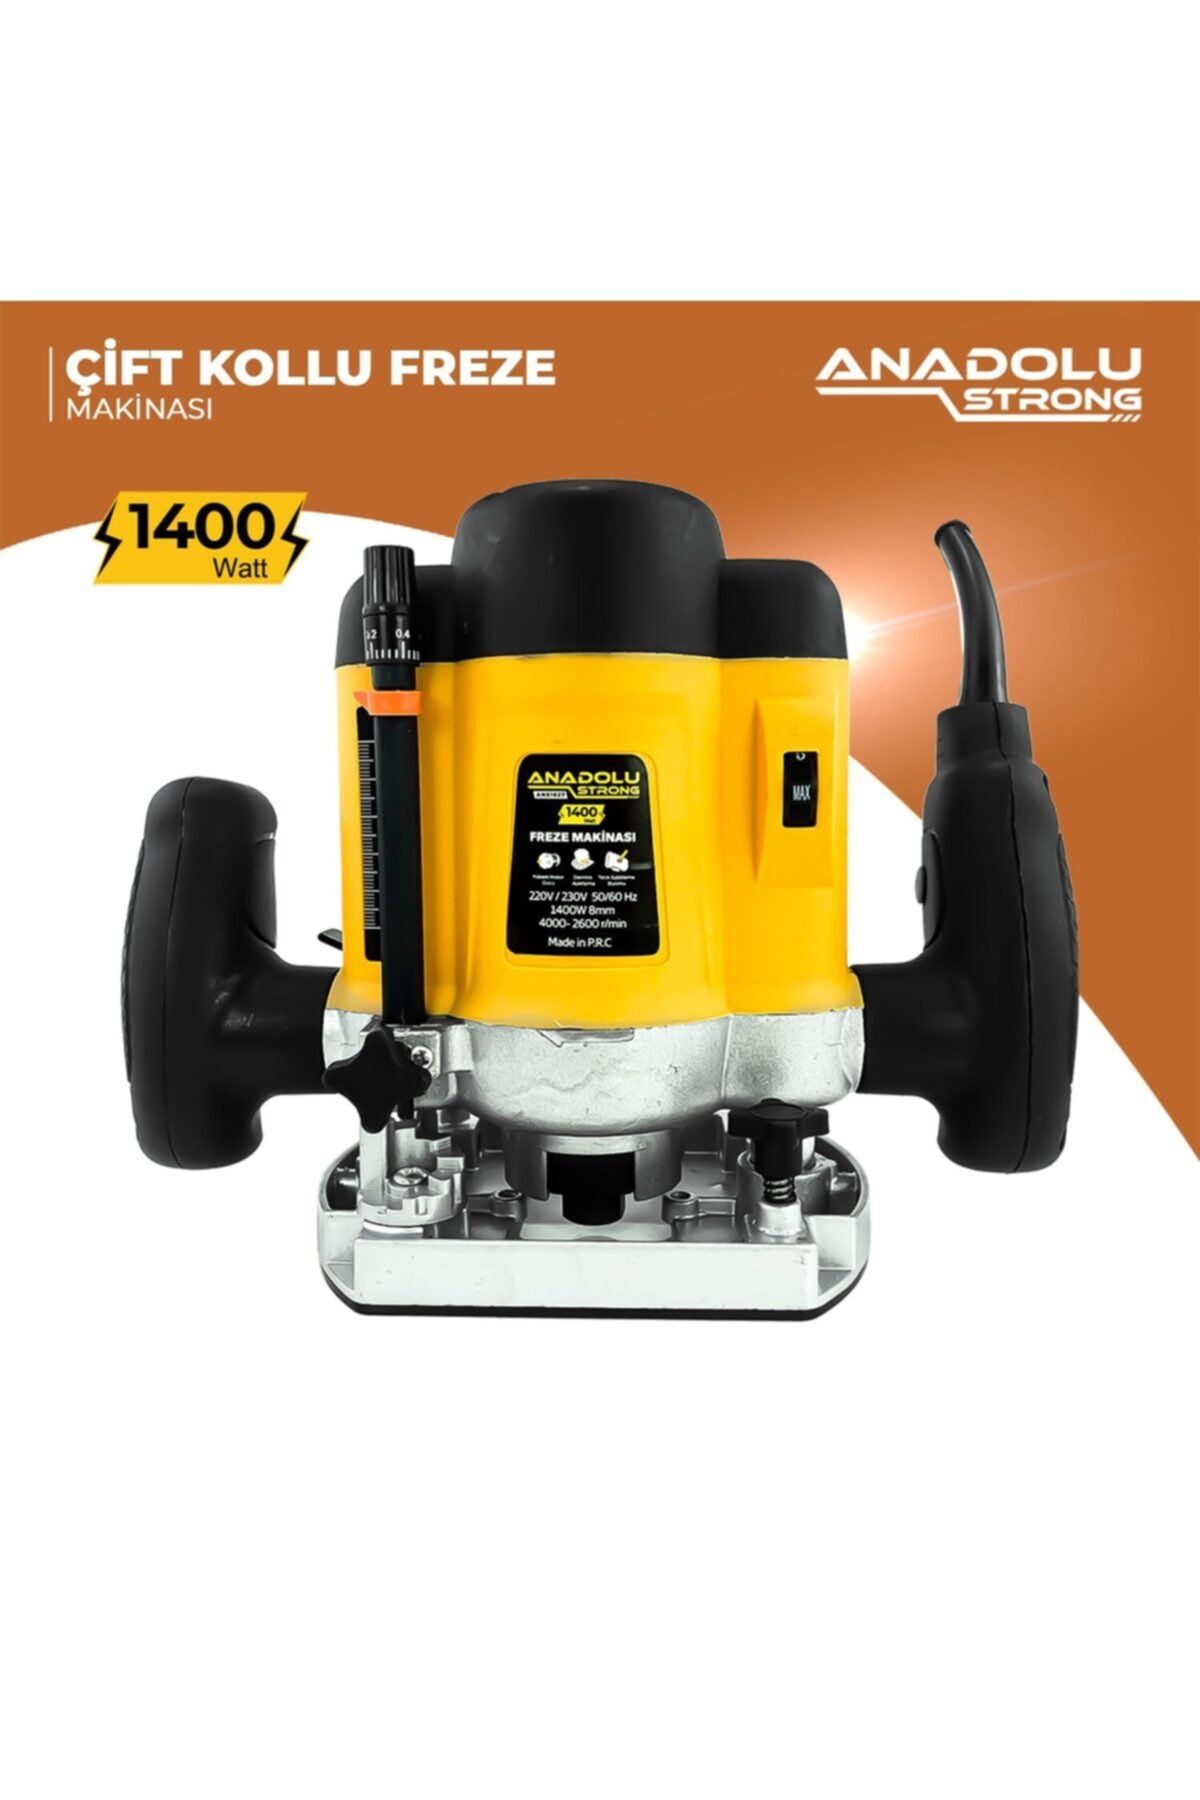 Anadolu Strong Anadolustrong Ans1027 1400w Profesyonel Çift Kollu Freze Makinası